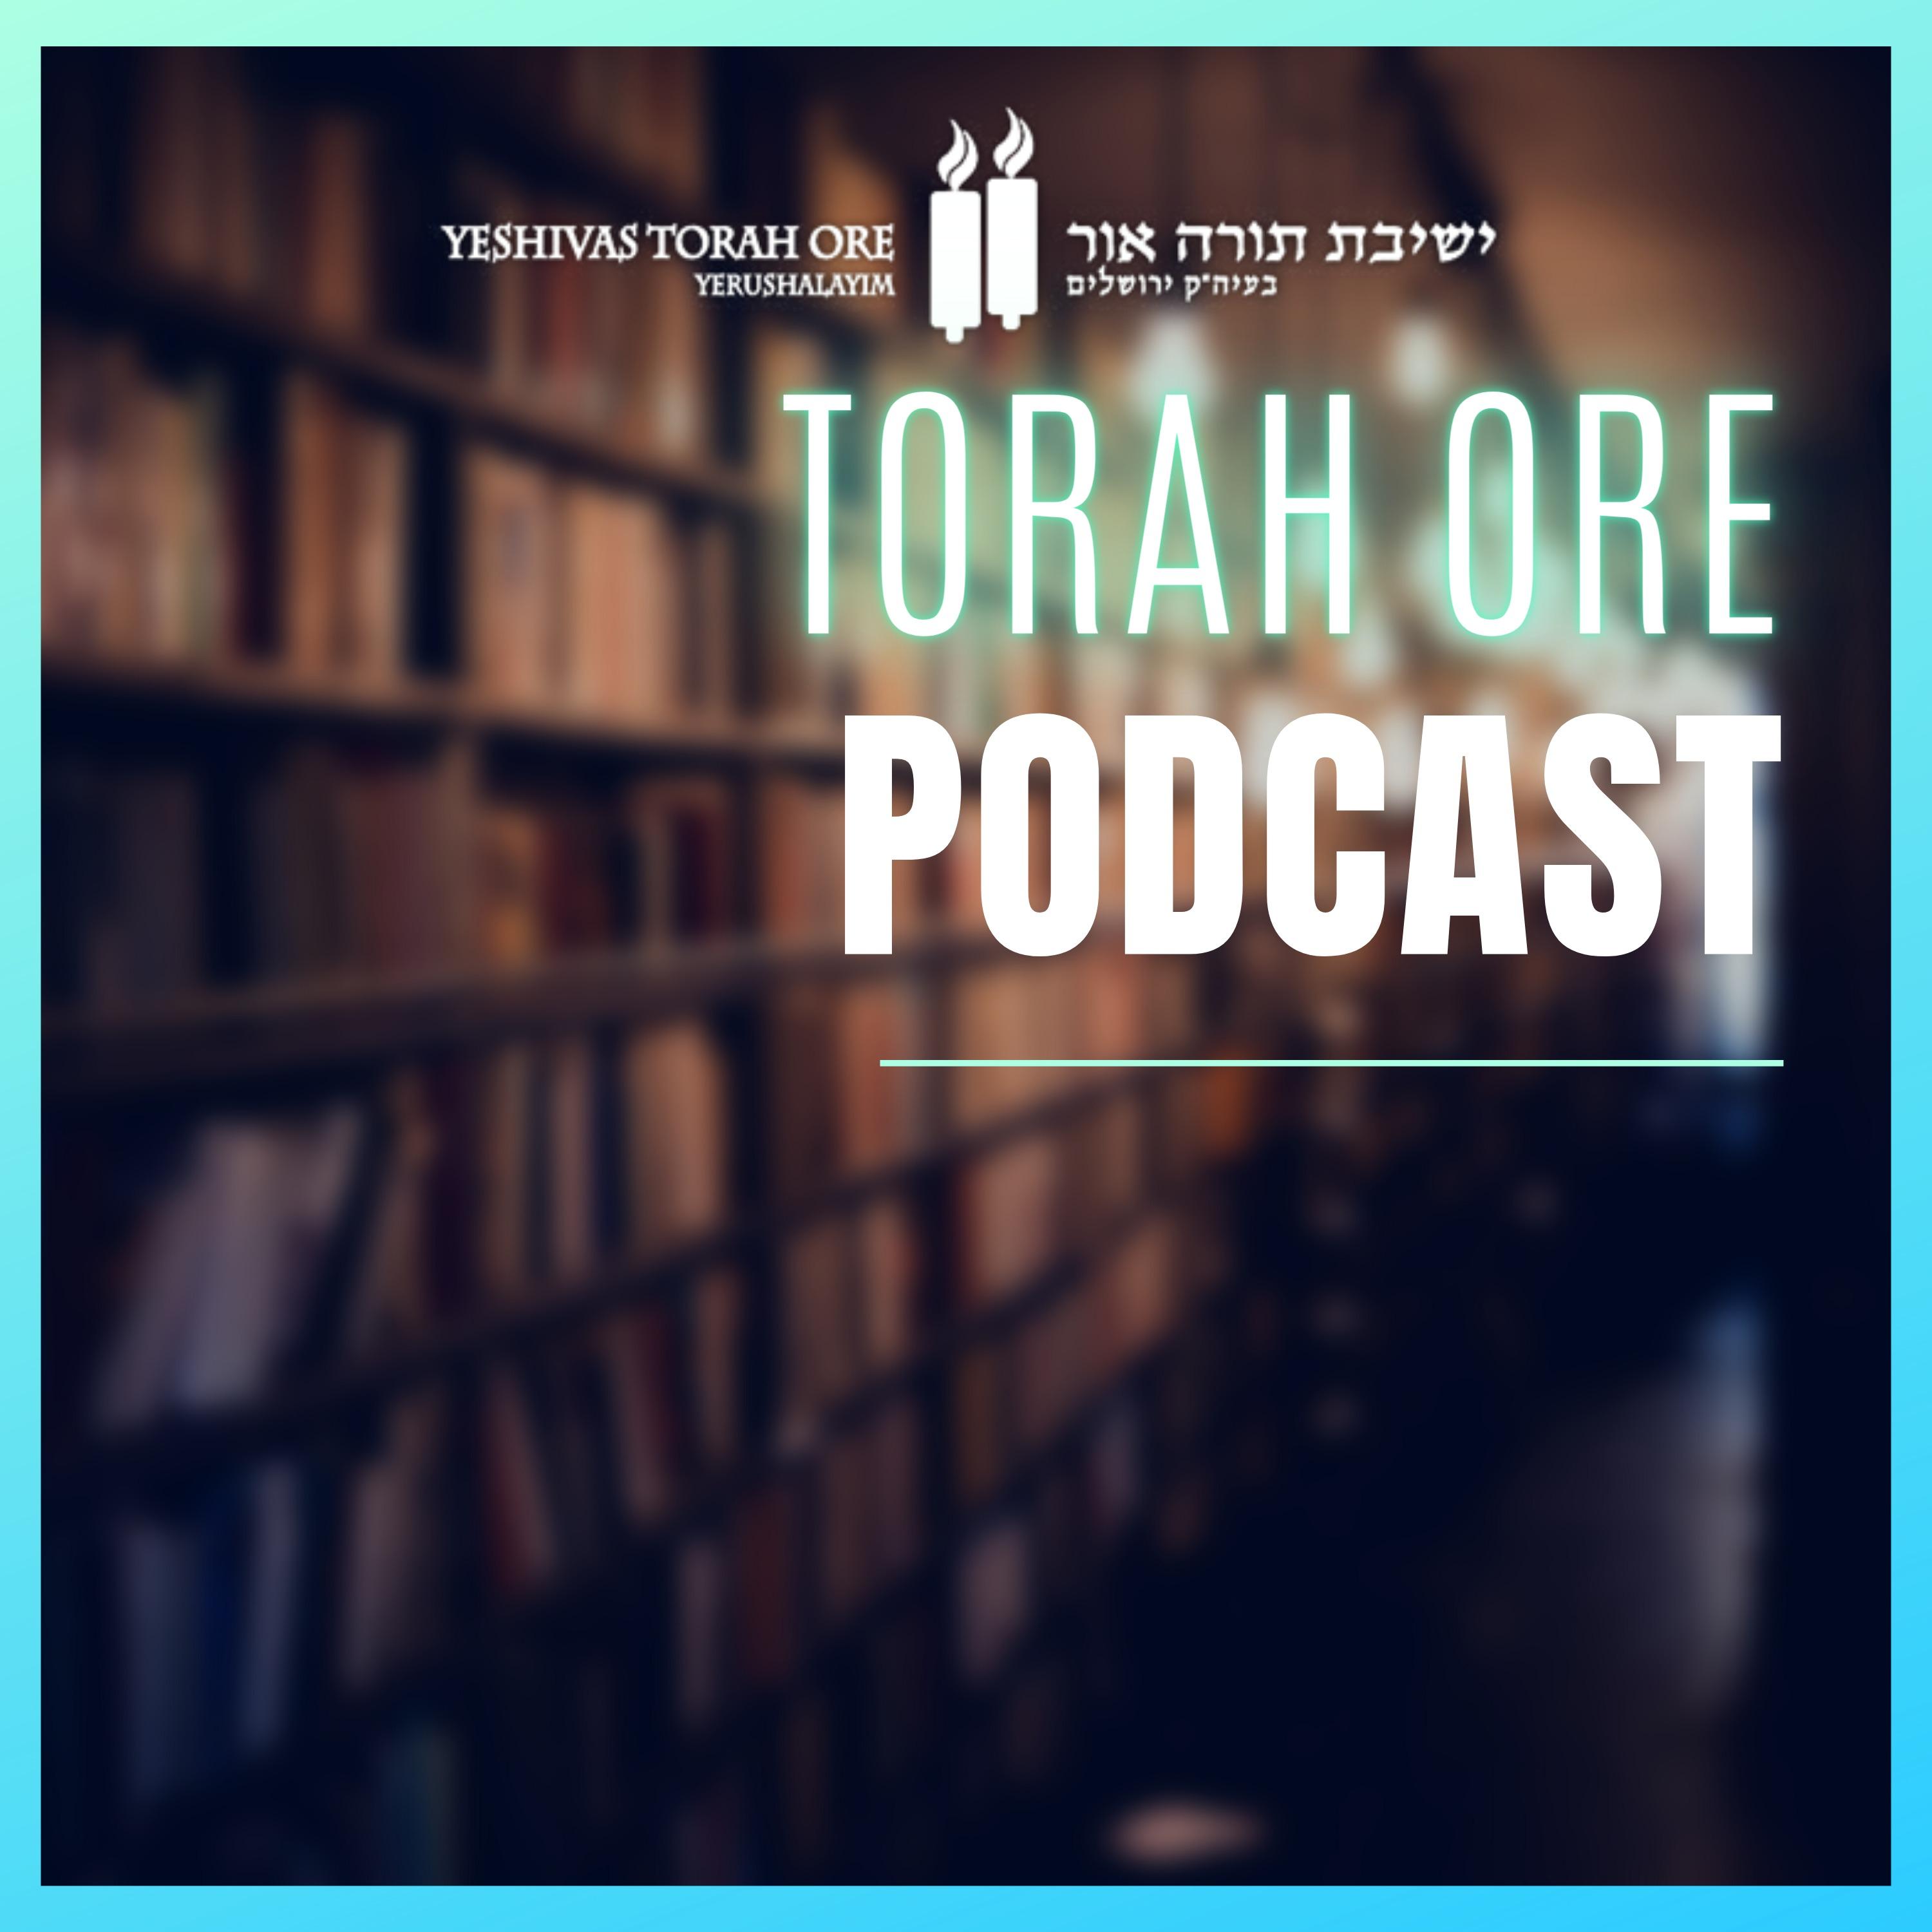 Torah Ore